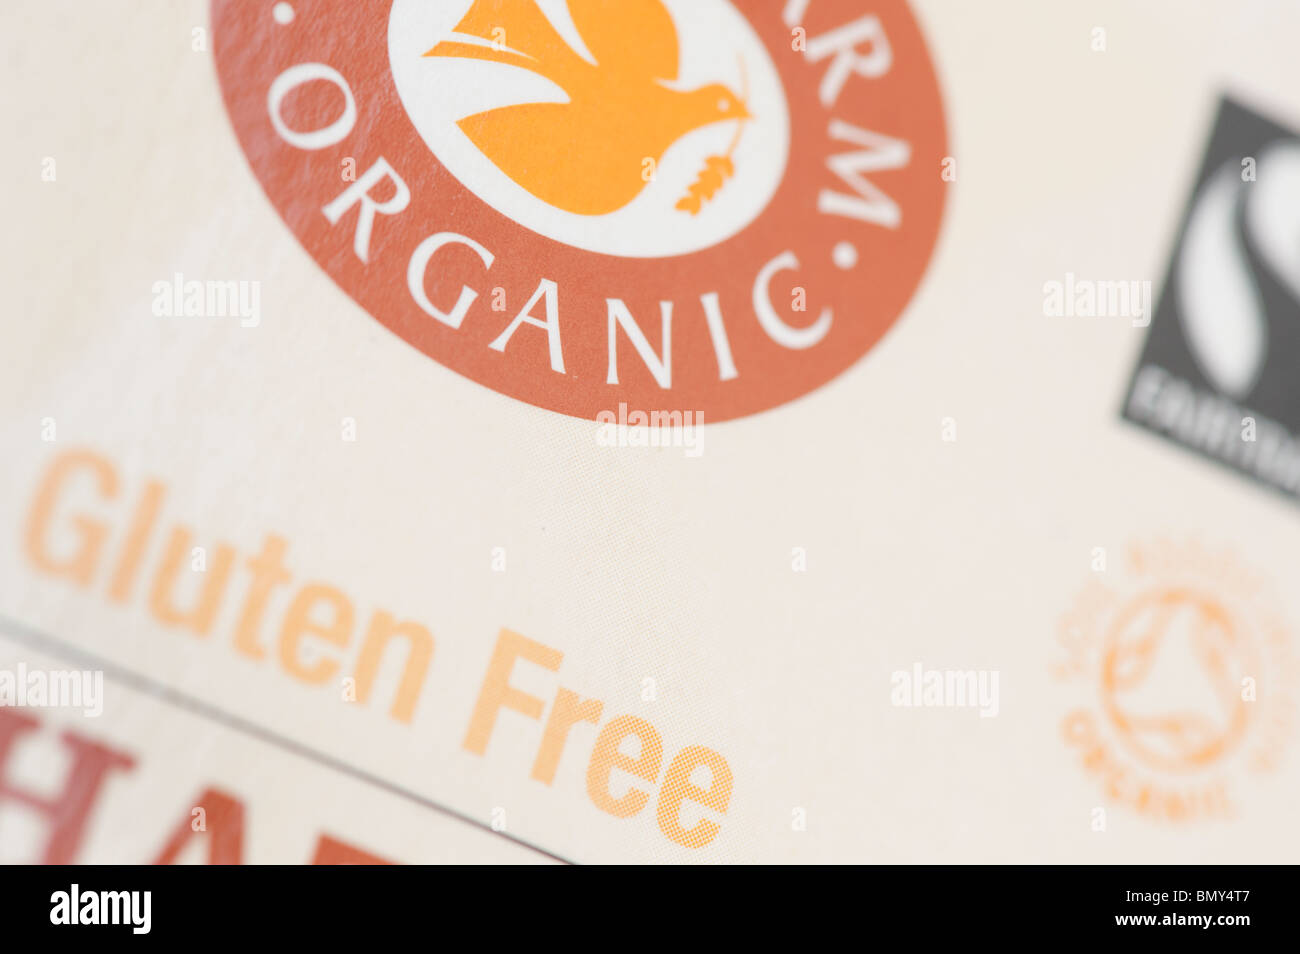 Libero di frumento, senza glutine, pacchetto alimentare etichette sui cookie di organico Foto Stock